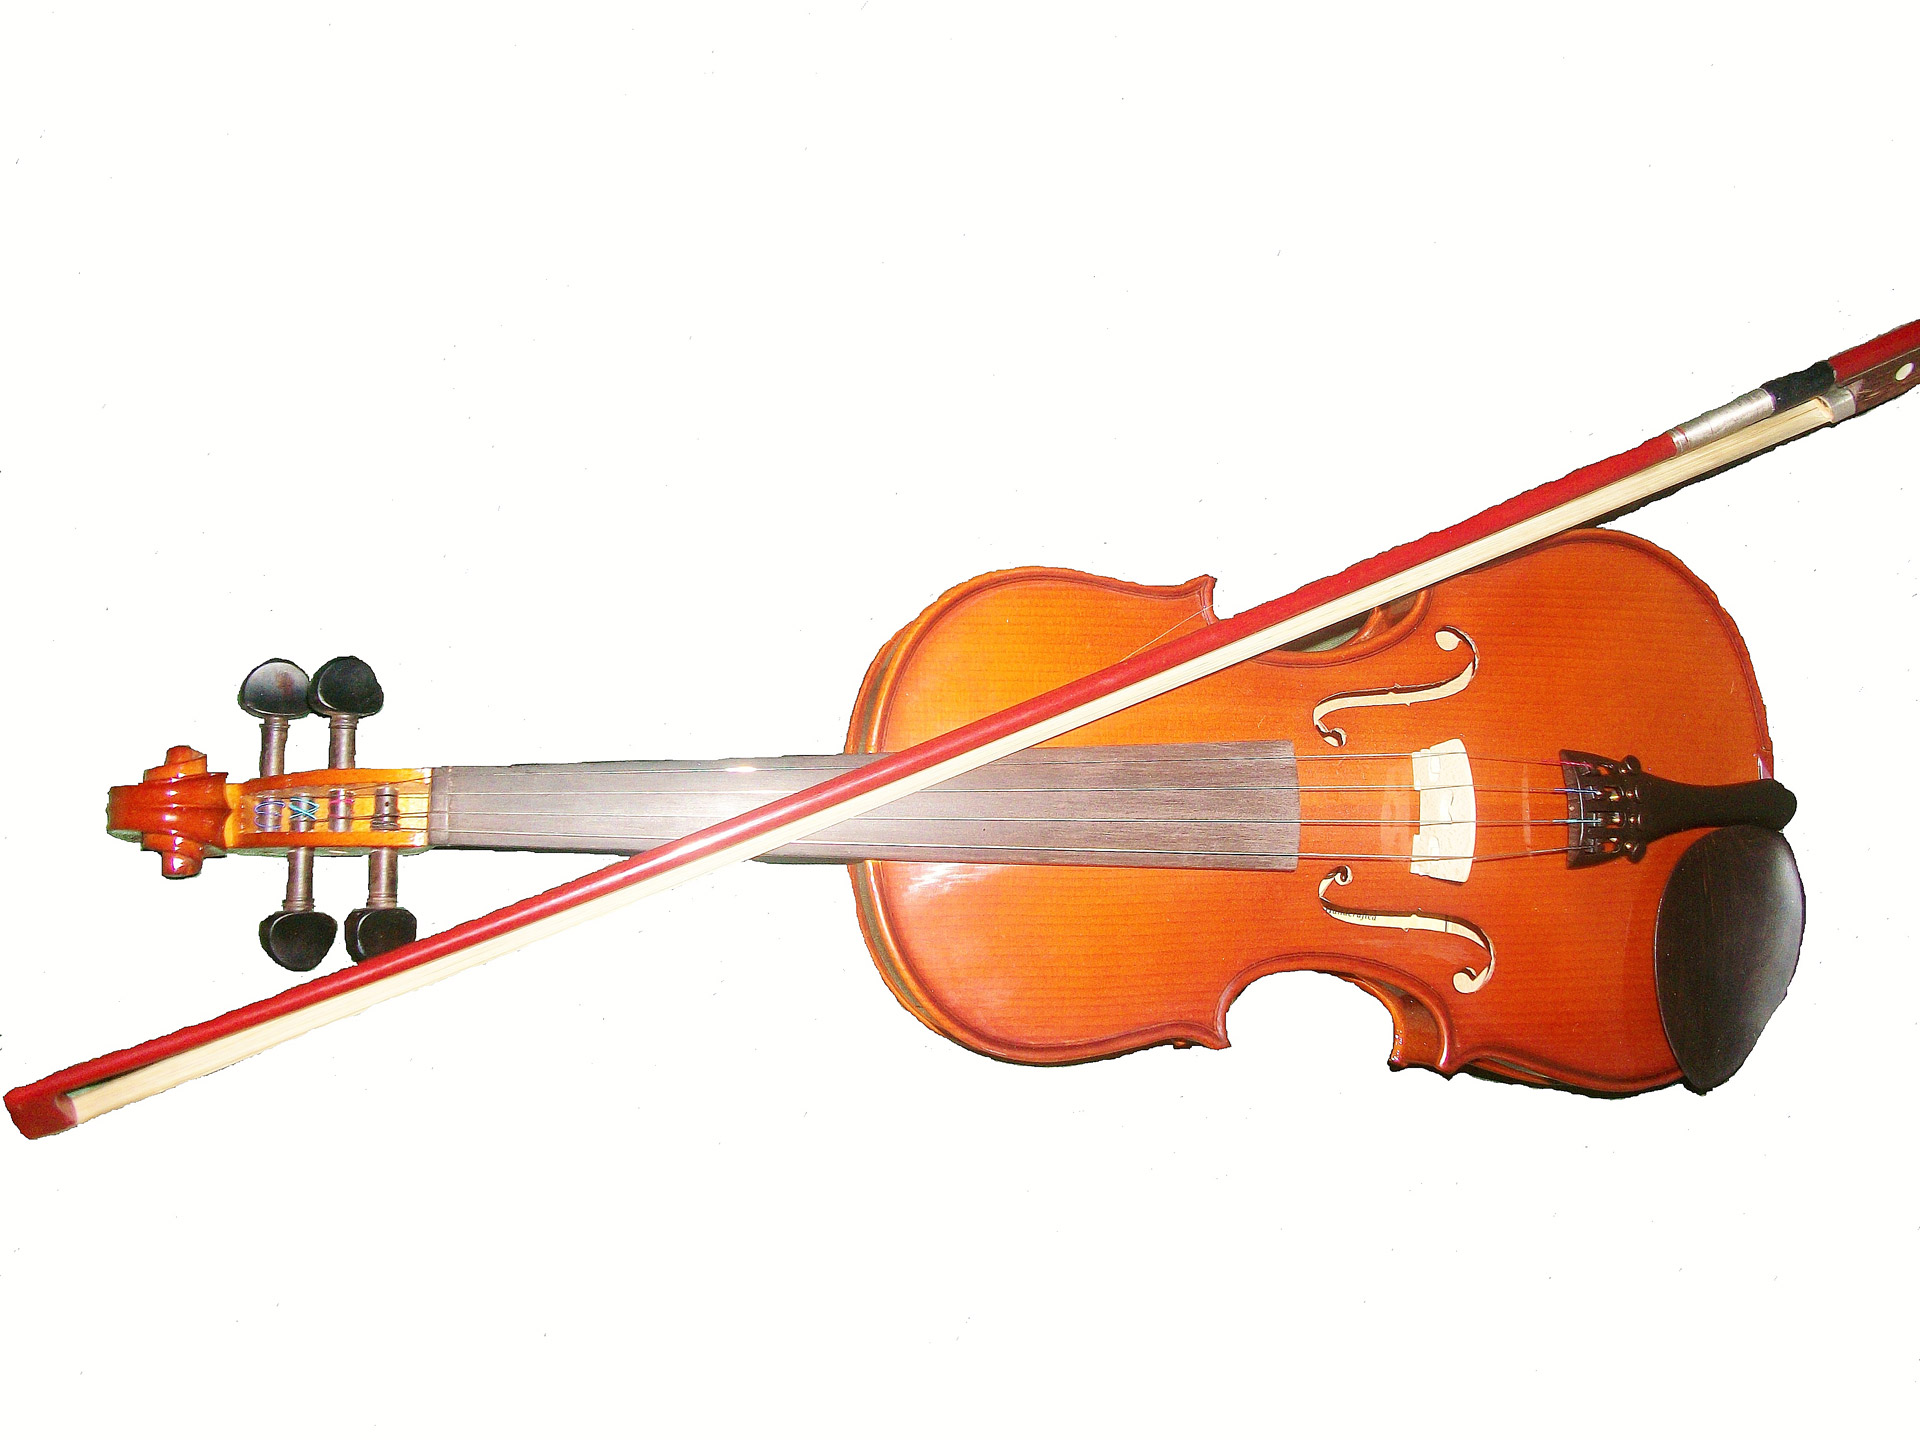 Violin instruments. Музыкальные инструменты. Скрипка. Скрипка музыкальный инструмент. Изображение музыкальных инструментов.